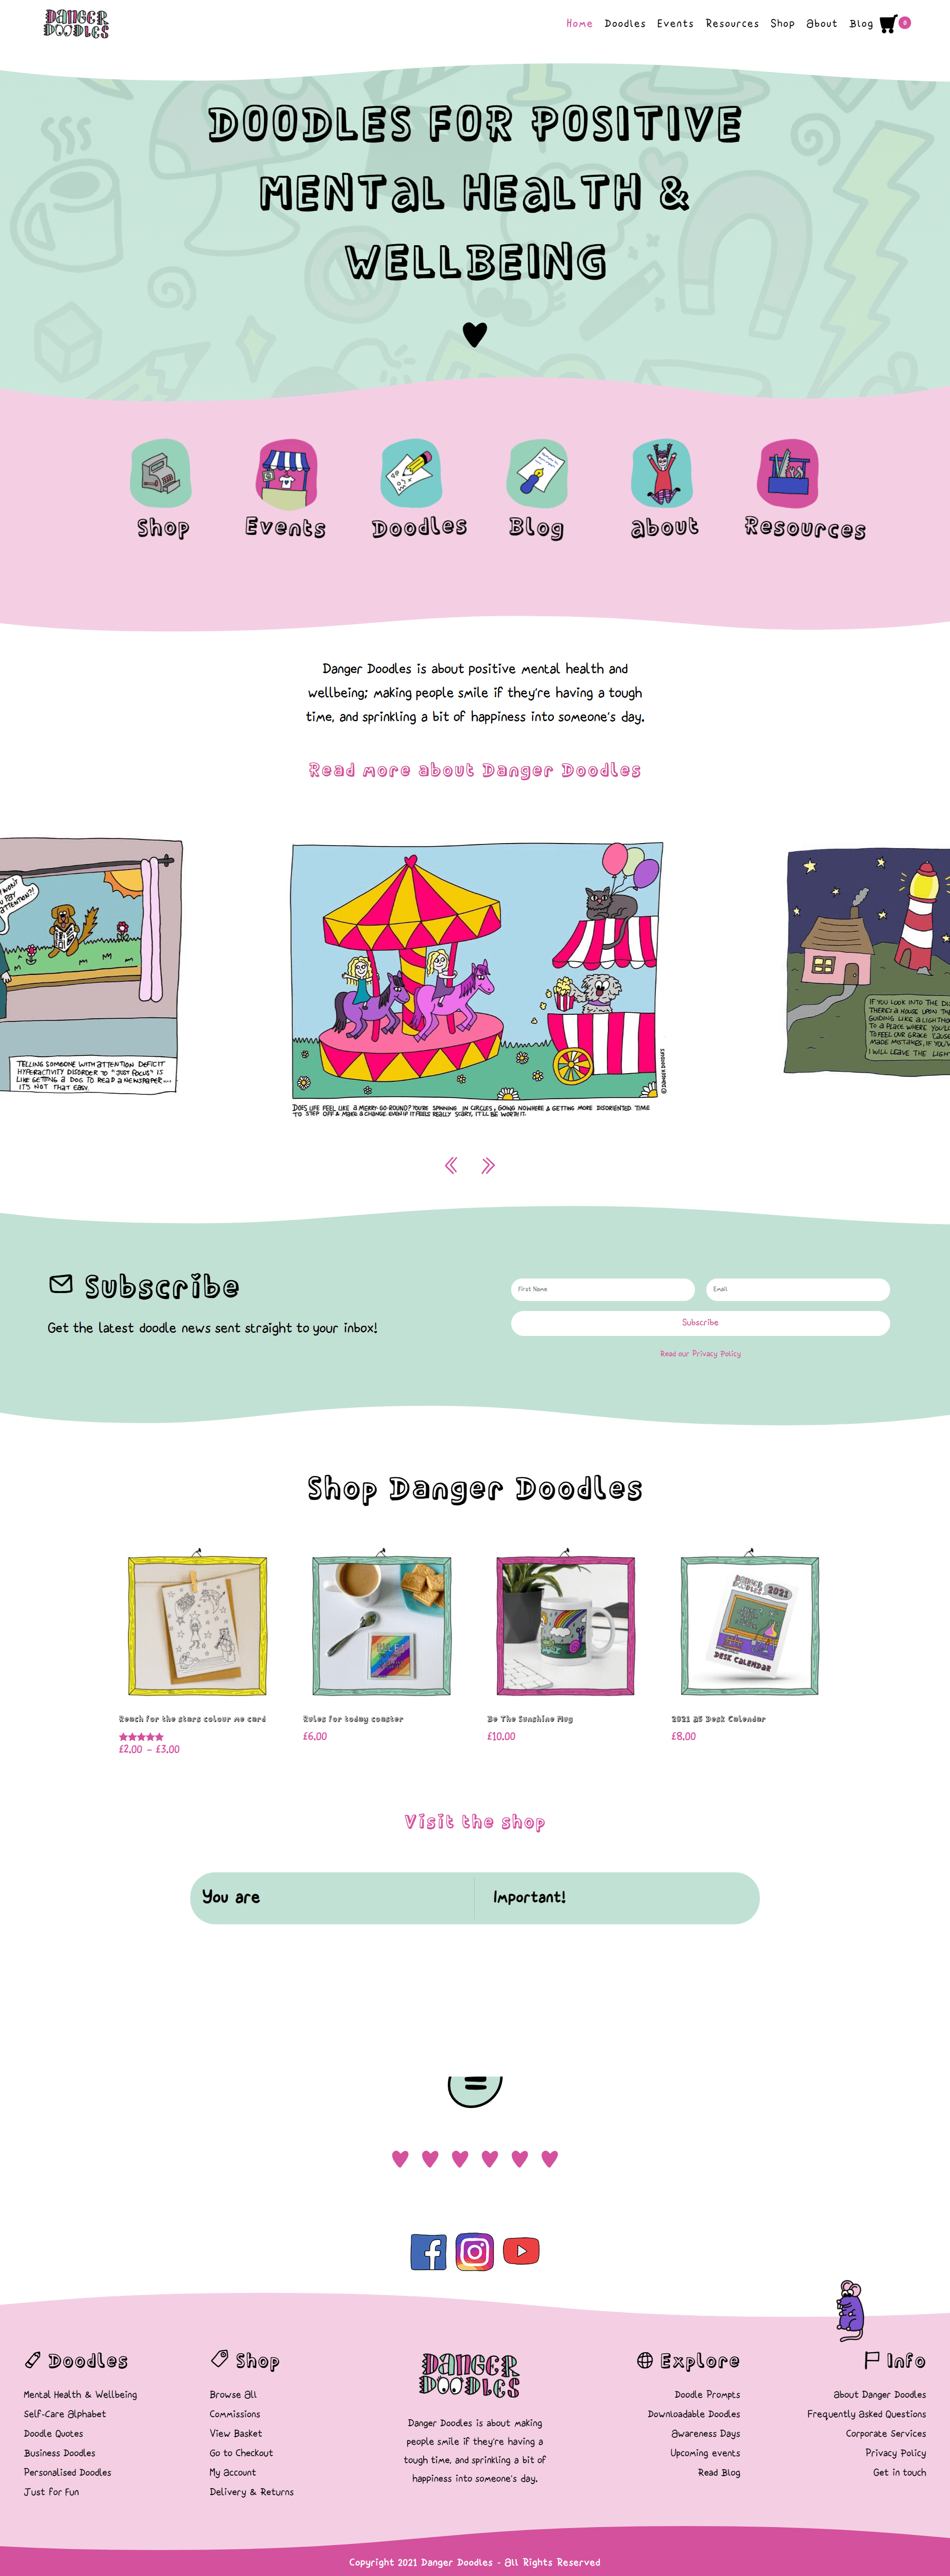 Website Design for Danger Doodles by Sarah Tamsin